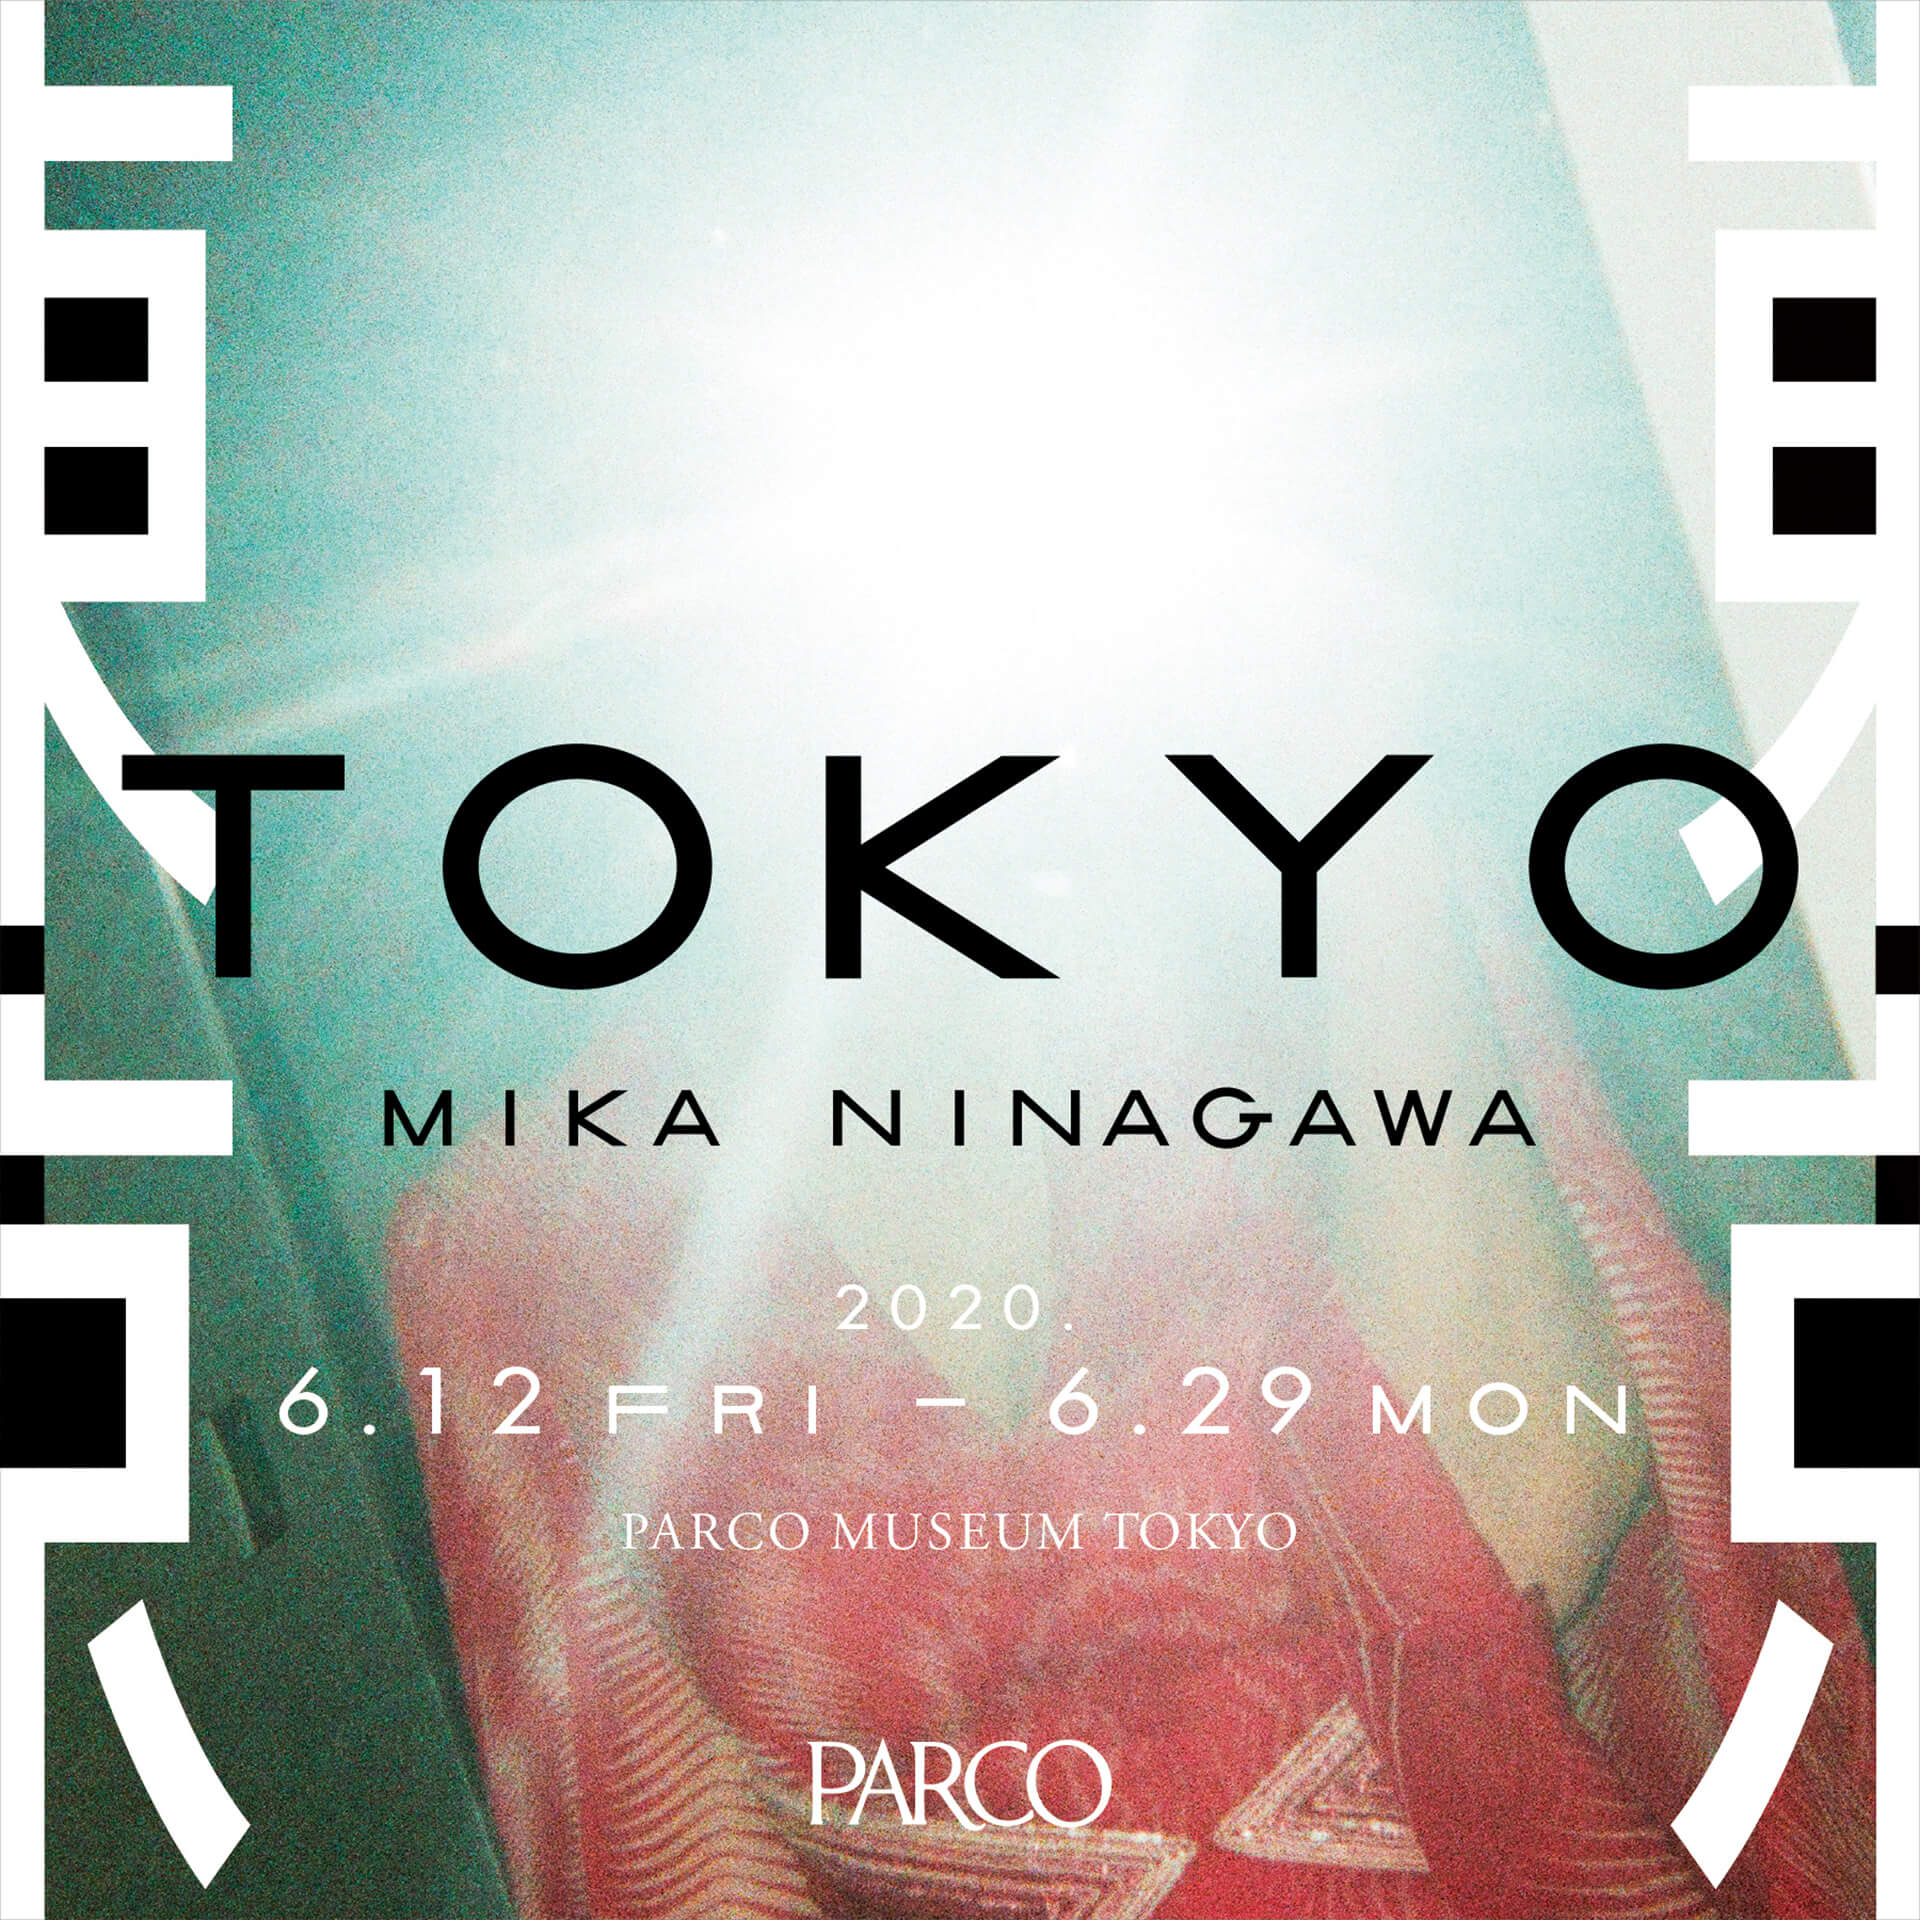 東京 TOKYO / MIKA NINAGAWA」PARCO MUSEUM TOKYO